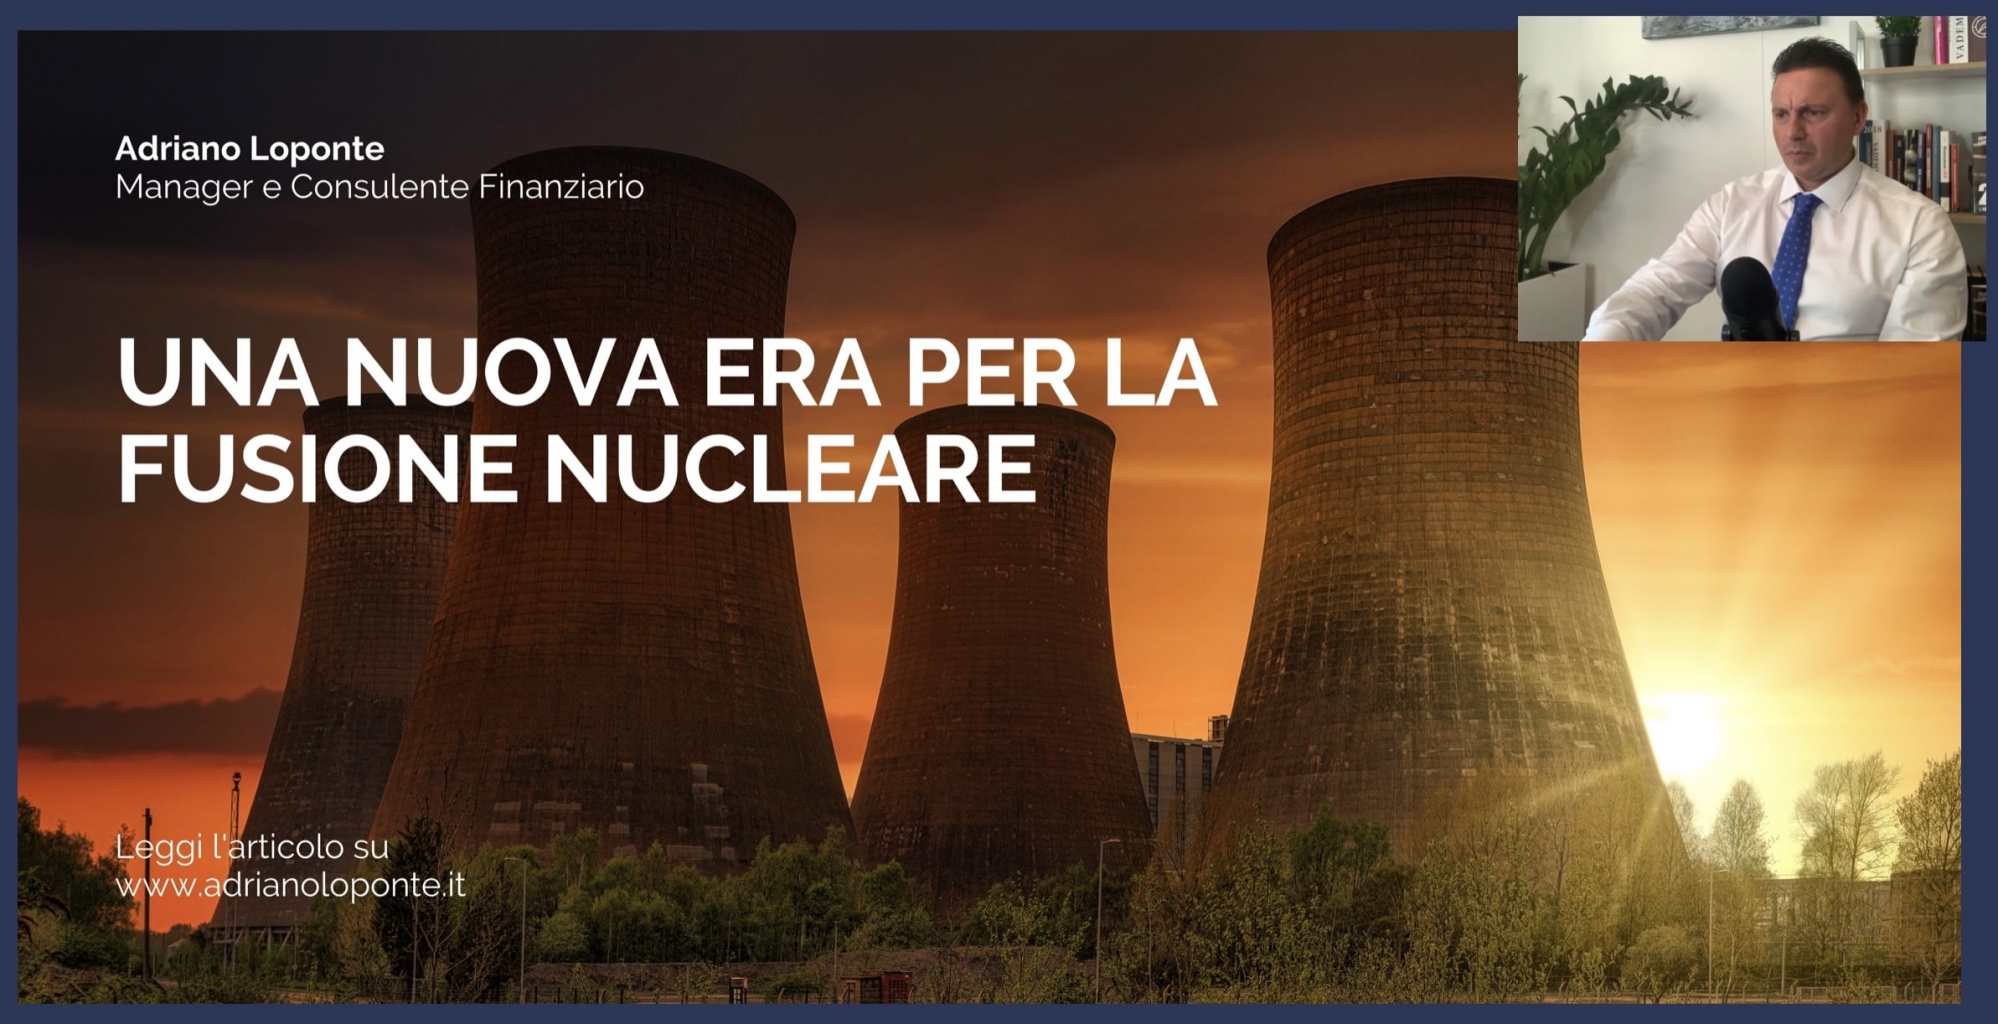 Fusione nucleare: dal record di energia 'pulita' la scintilla per una nuova era